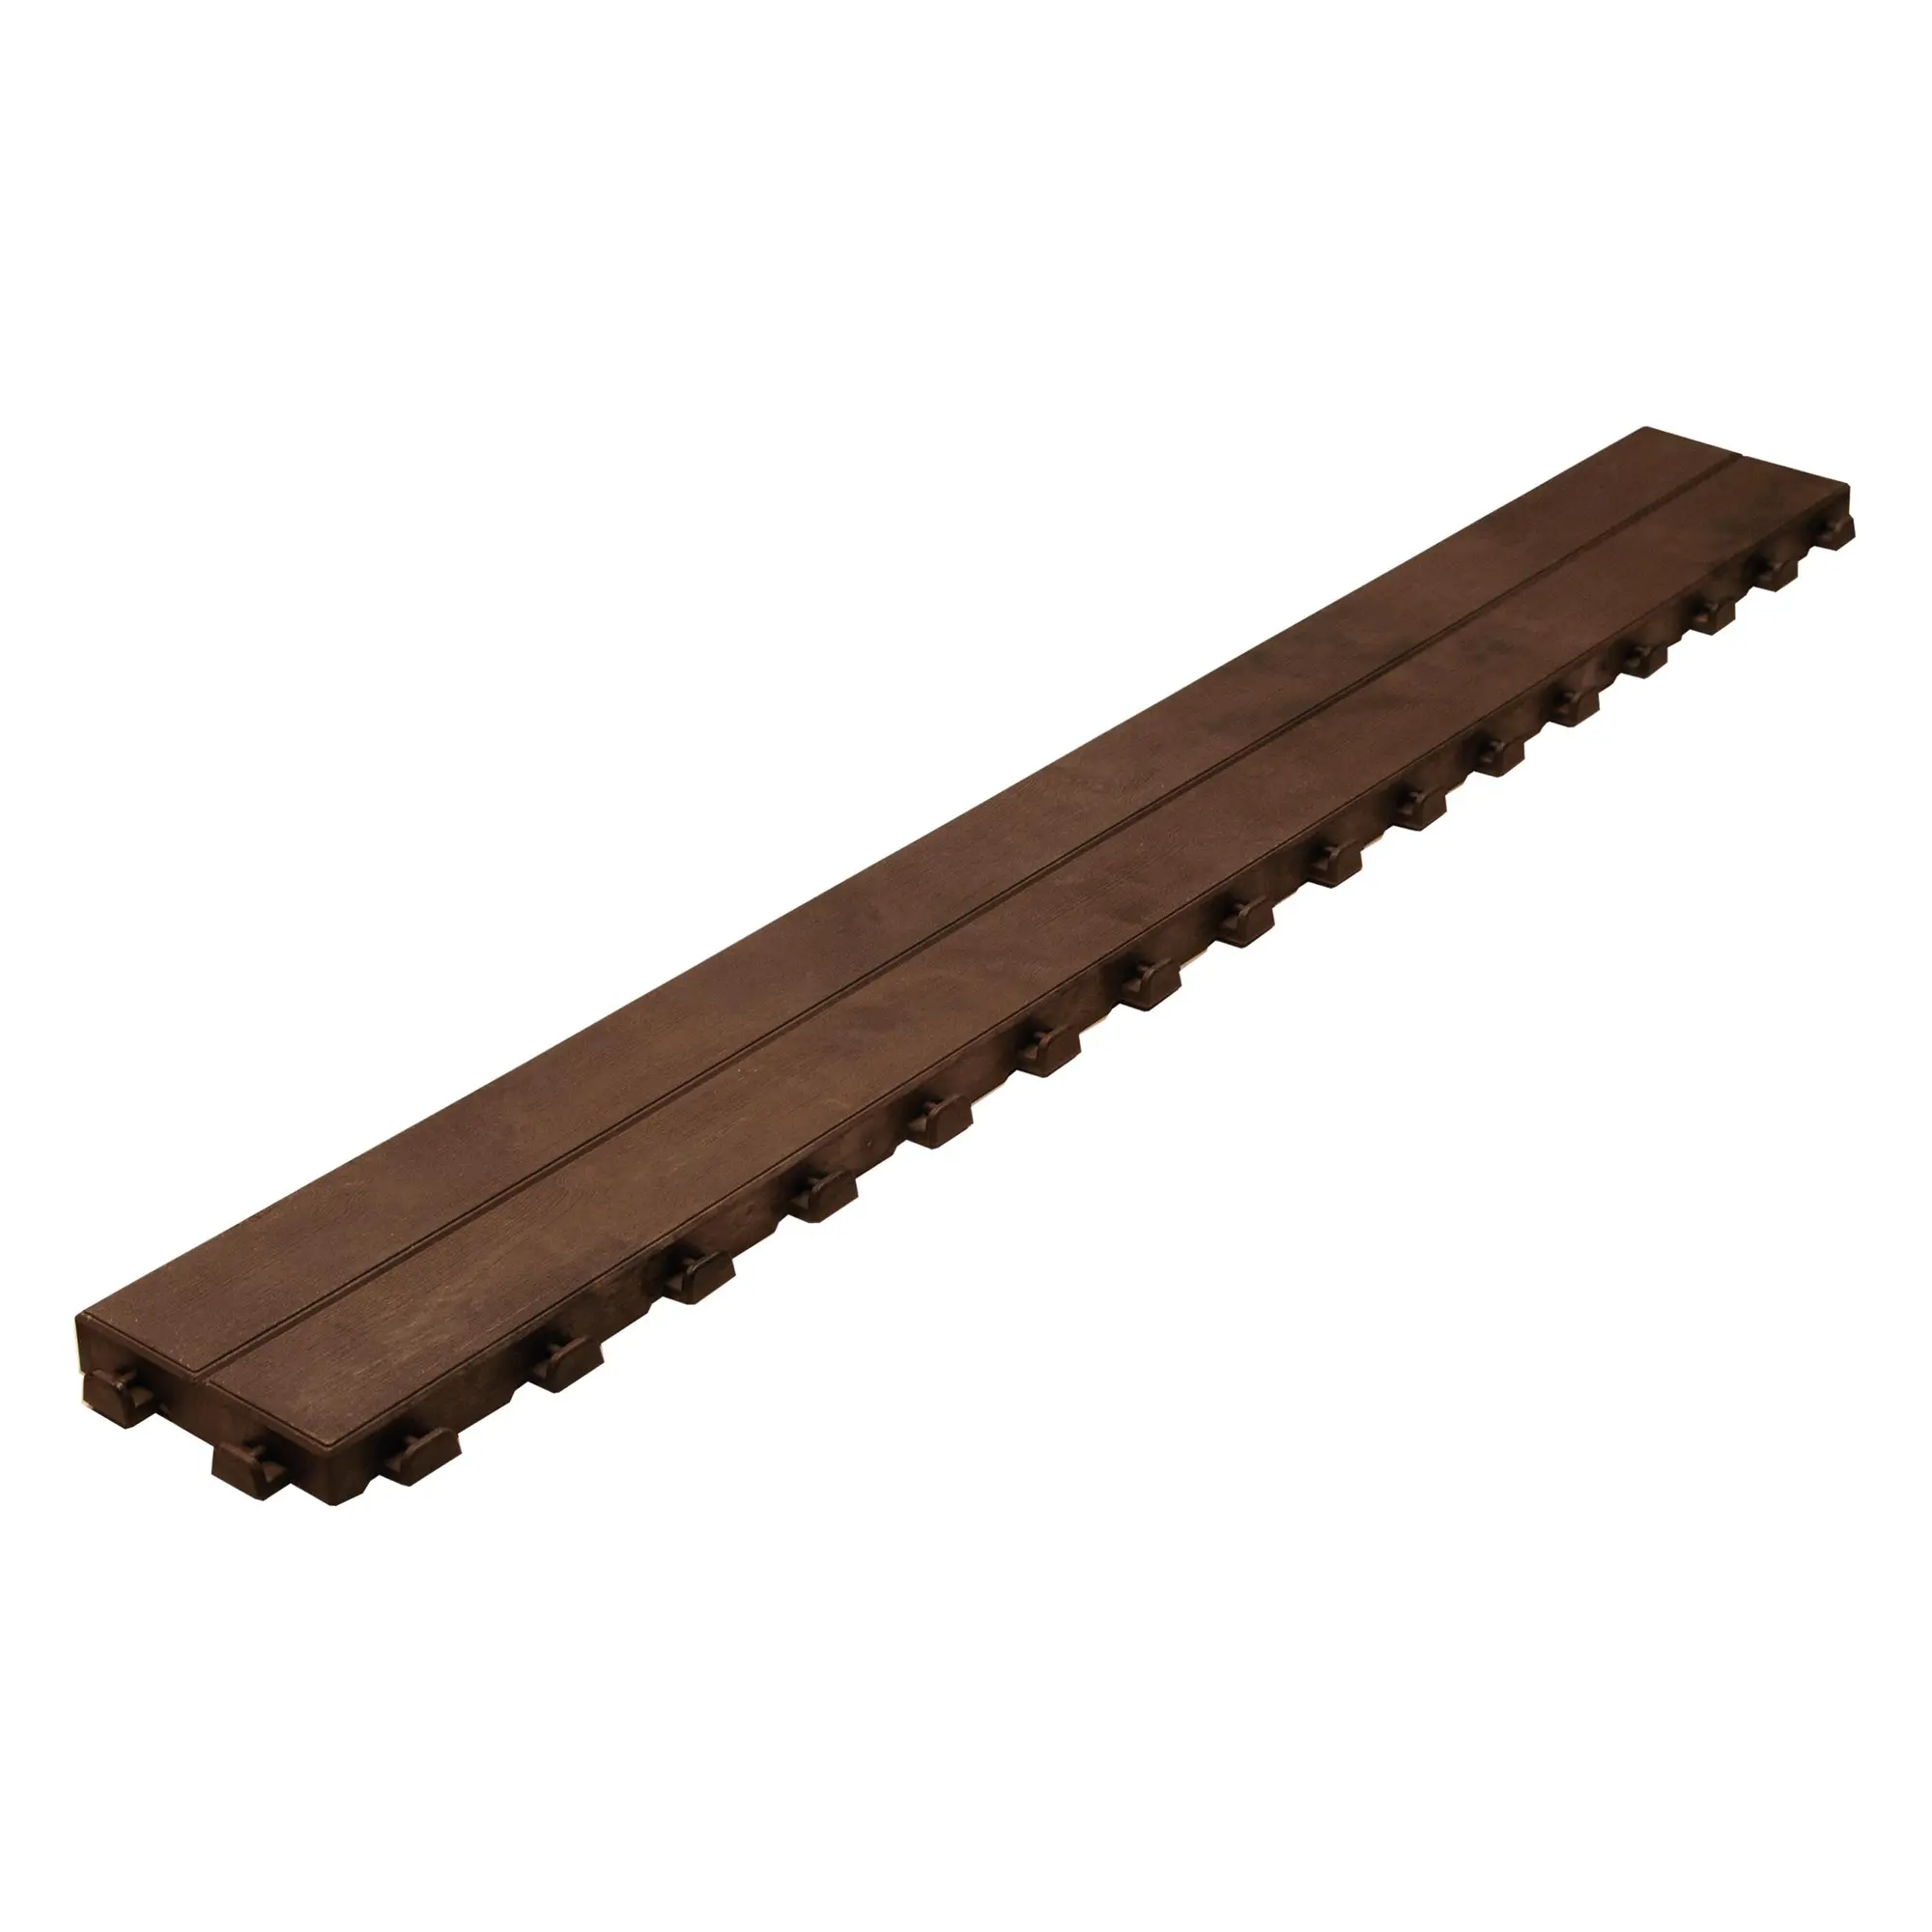 Listone da incastro Effetto legno in polipropilene L 118 x H 14.5 cm, Sp 32 mm marrone